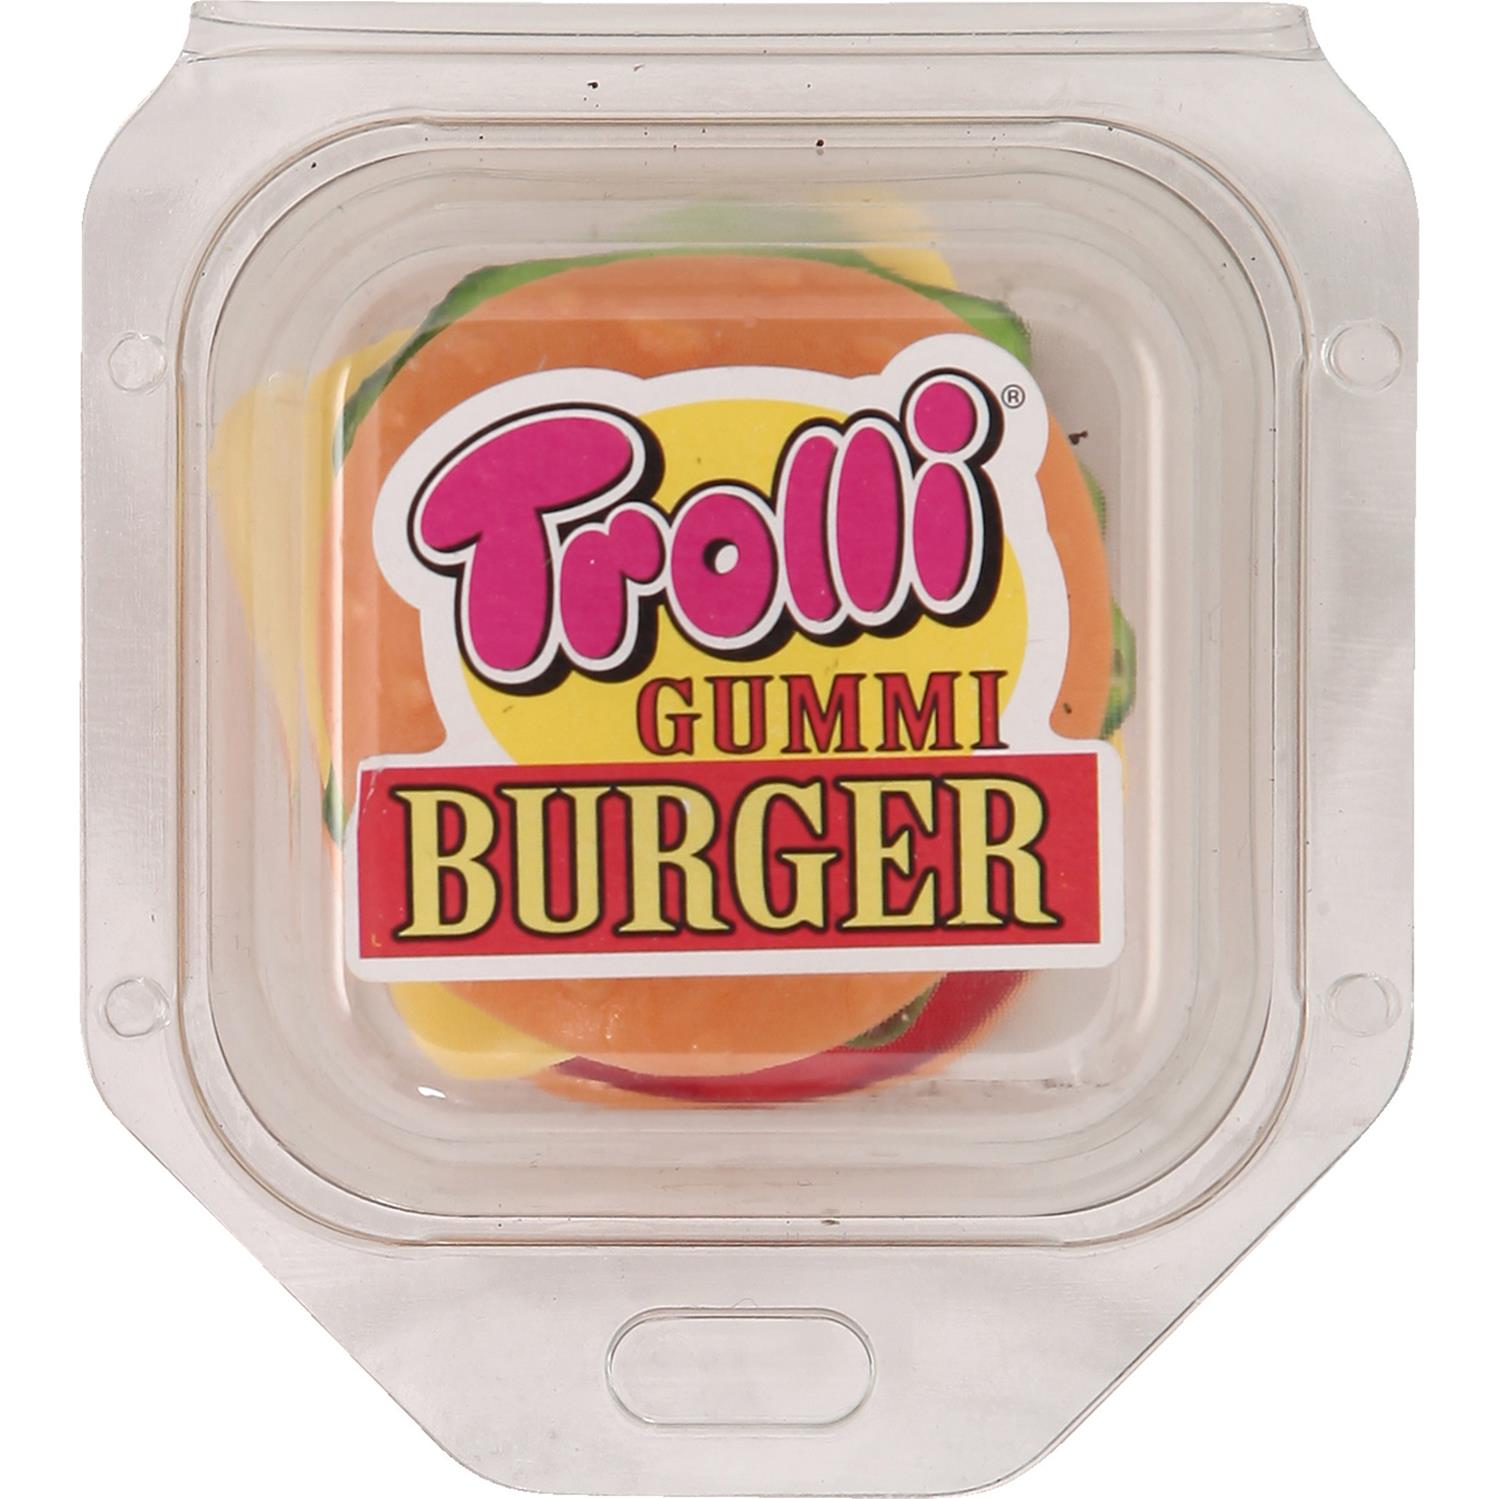 XXL Burger gummy candy - 50g TROLLI